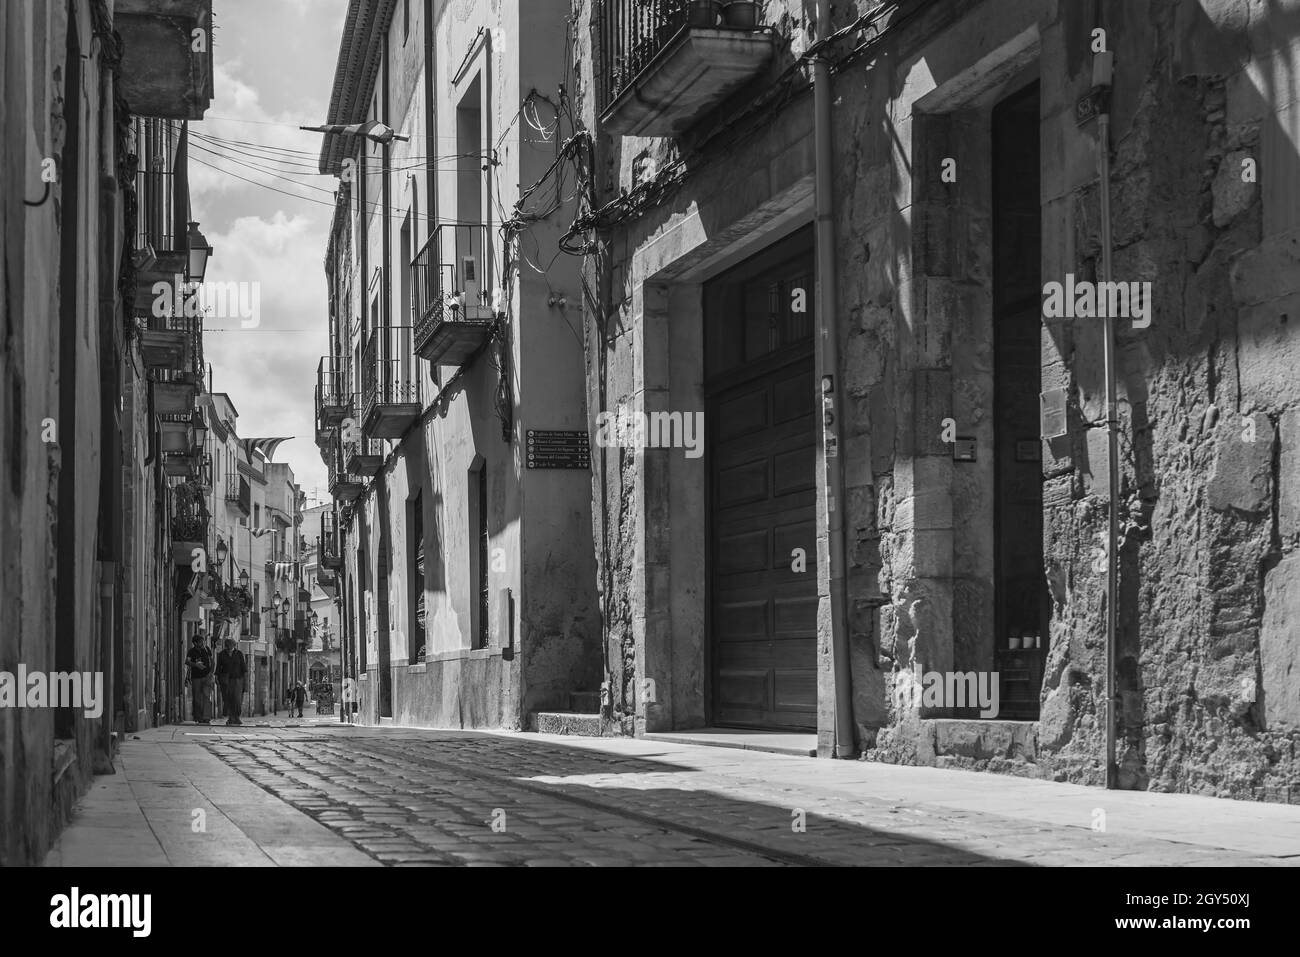 MONTBLANC, SPANIEN - 12. SEPTEMBER 2021: Schwarz-Weiß-Vintage-Bild einer kleinen Straße mit alten Gebäuden in Spanien Stockfoto